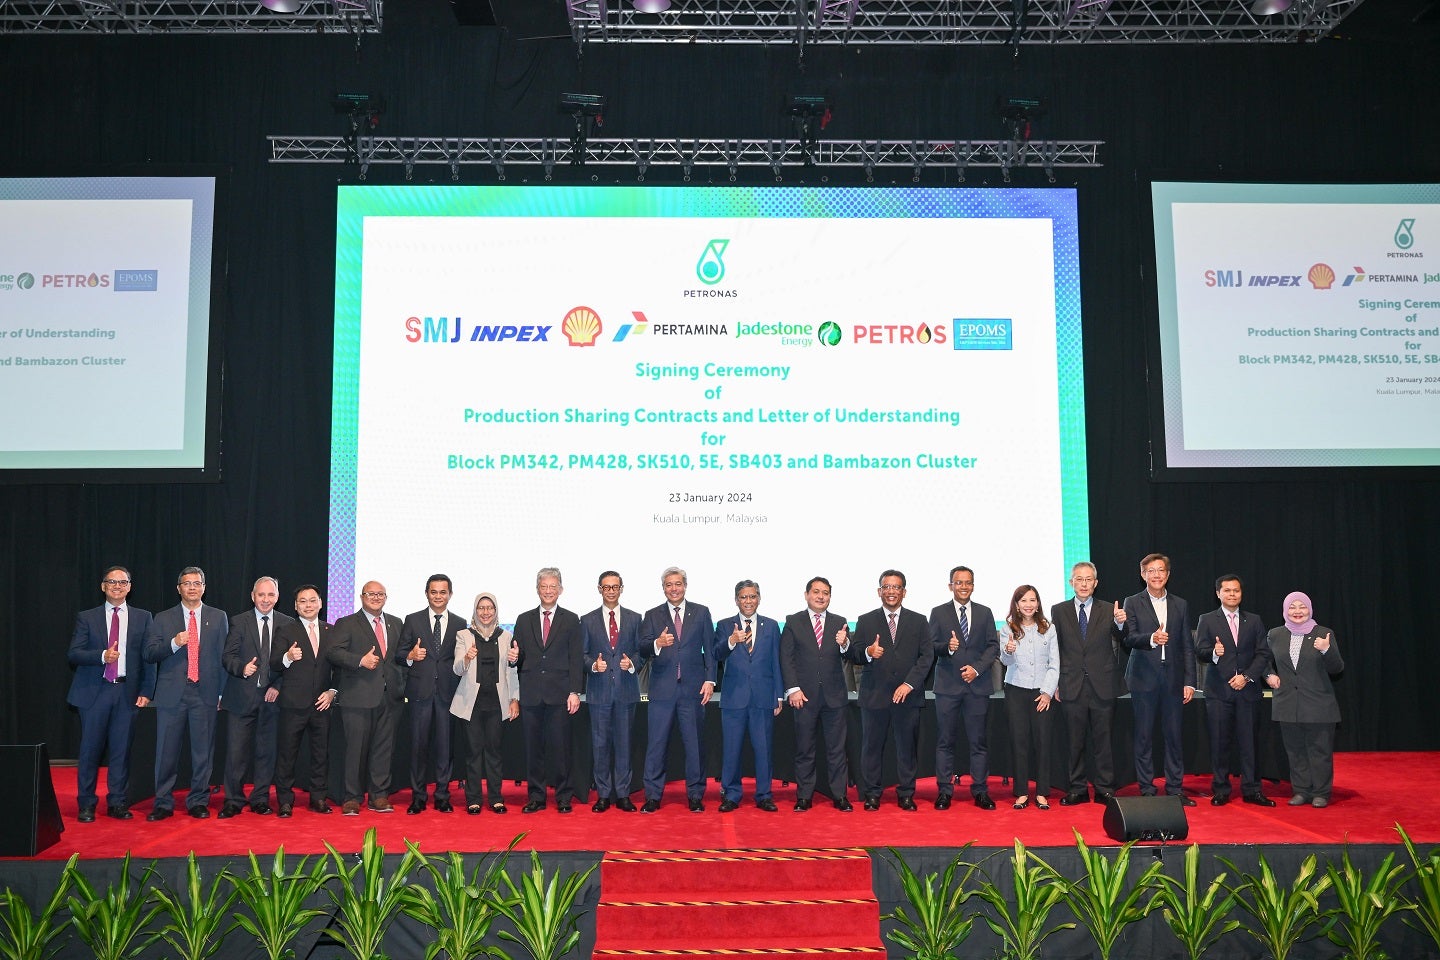 马来西亚国家石油公司在马来西亚近海授予七个新的产品分成合同